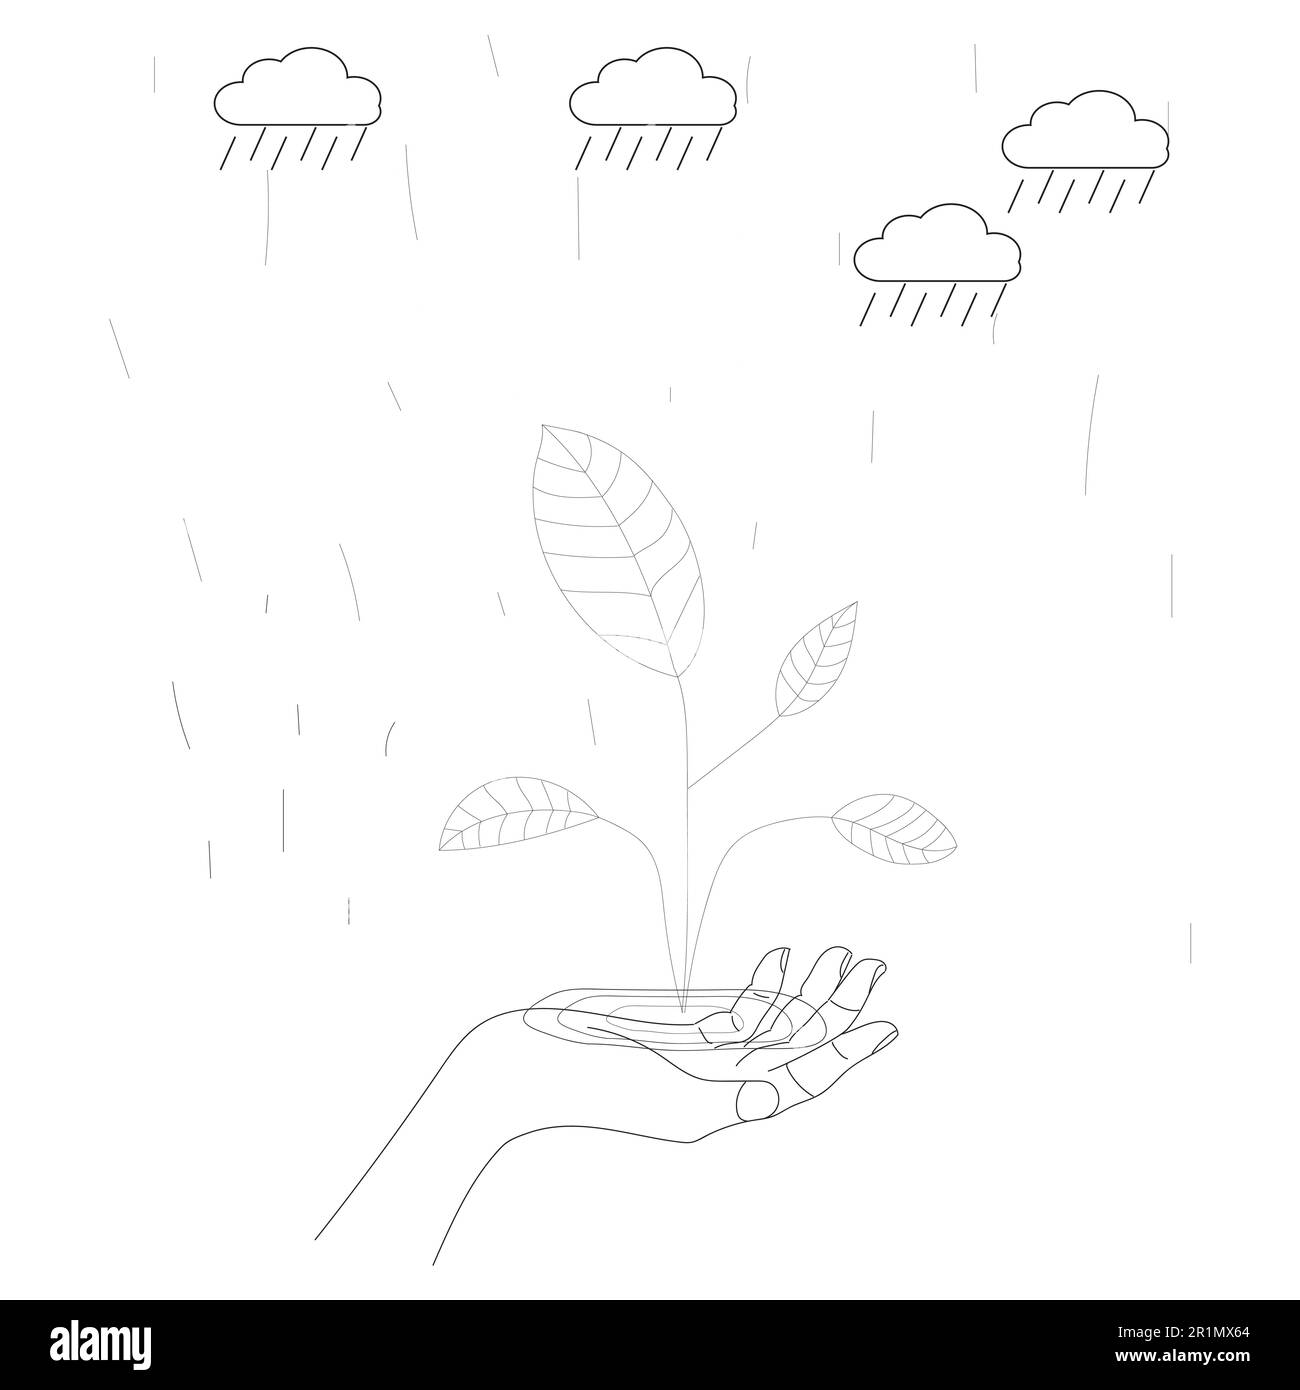 mains humaines tenant le globe terrestre avec arbre, soleil, nuage de pluie, ligne ou coolé, dessin à la main noir et blanc, l'écologie de la planète terre de l'environnement mondial Banque D'Images